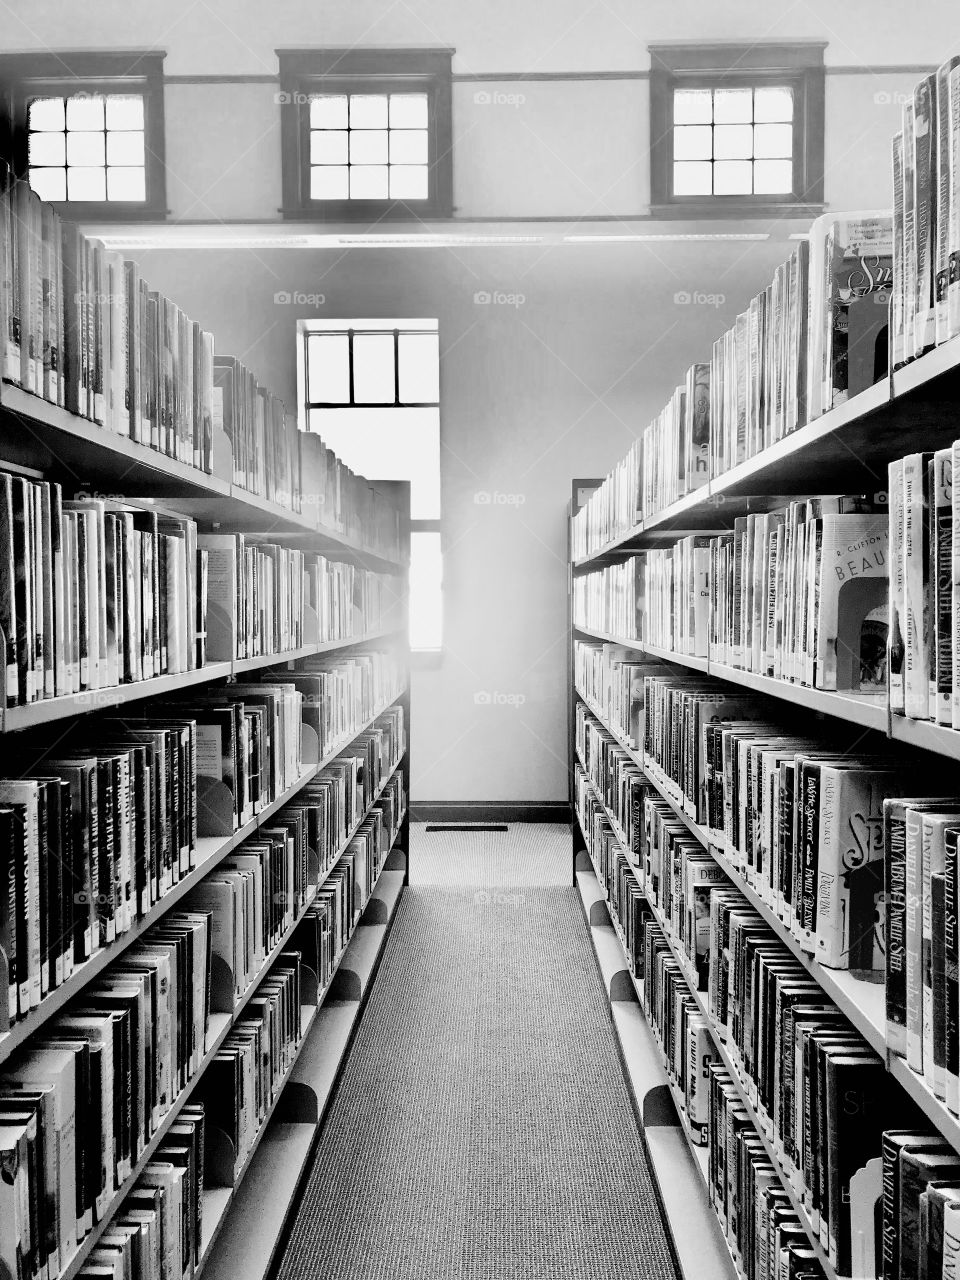 Interesting black and white photo of long row of bookshelves full of library books. 